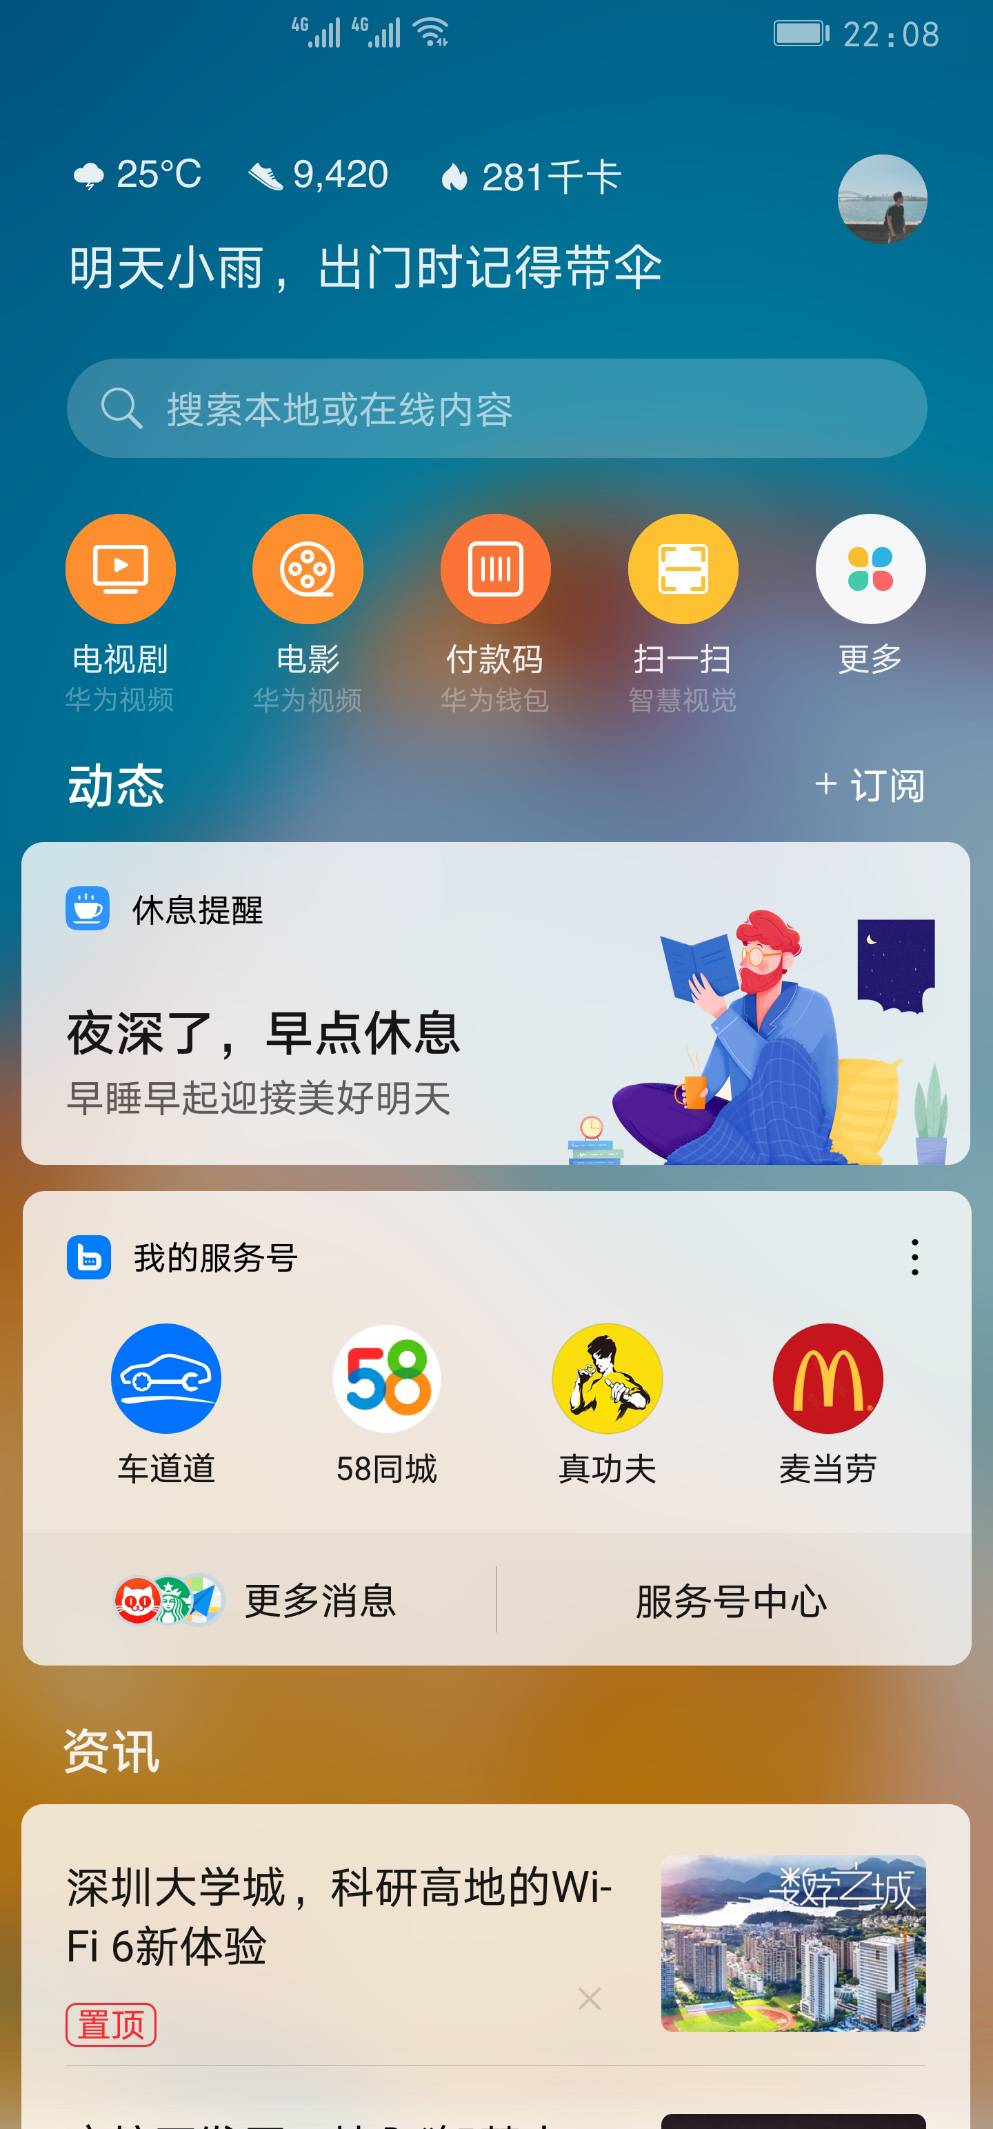 WechatIMG15 - Solleva il telefono Huawei e scorri verso destra per conoscere le funzionalità dello smartphone